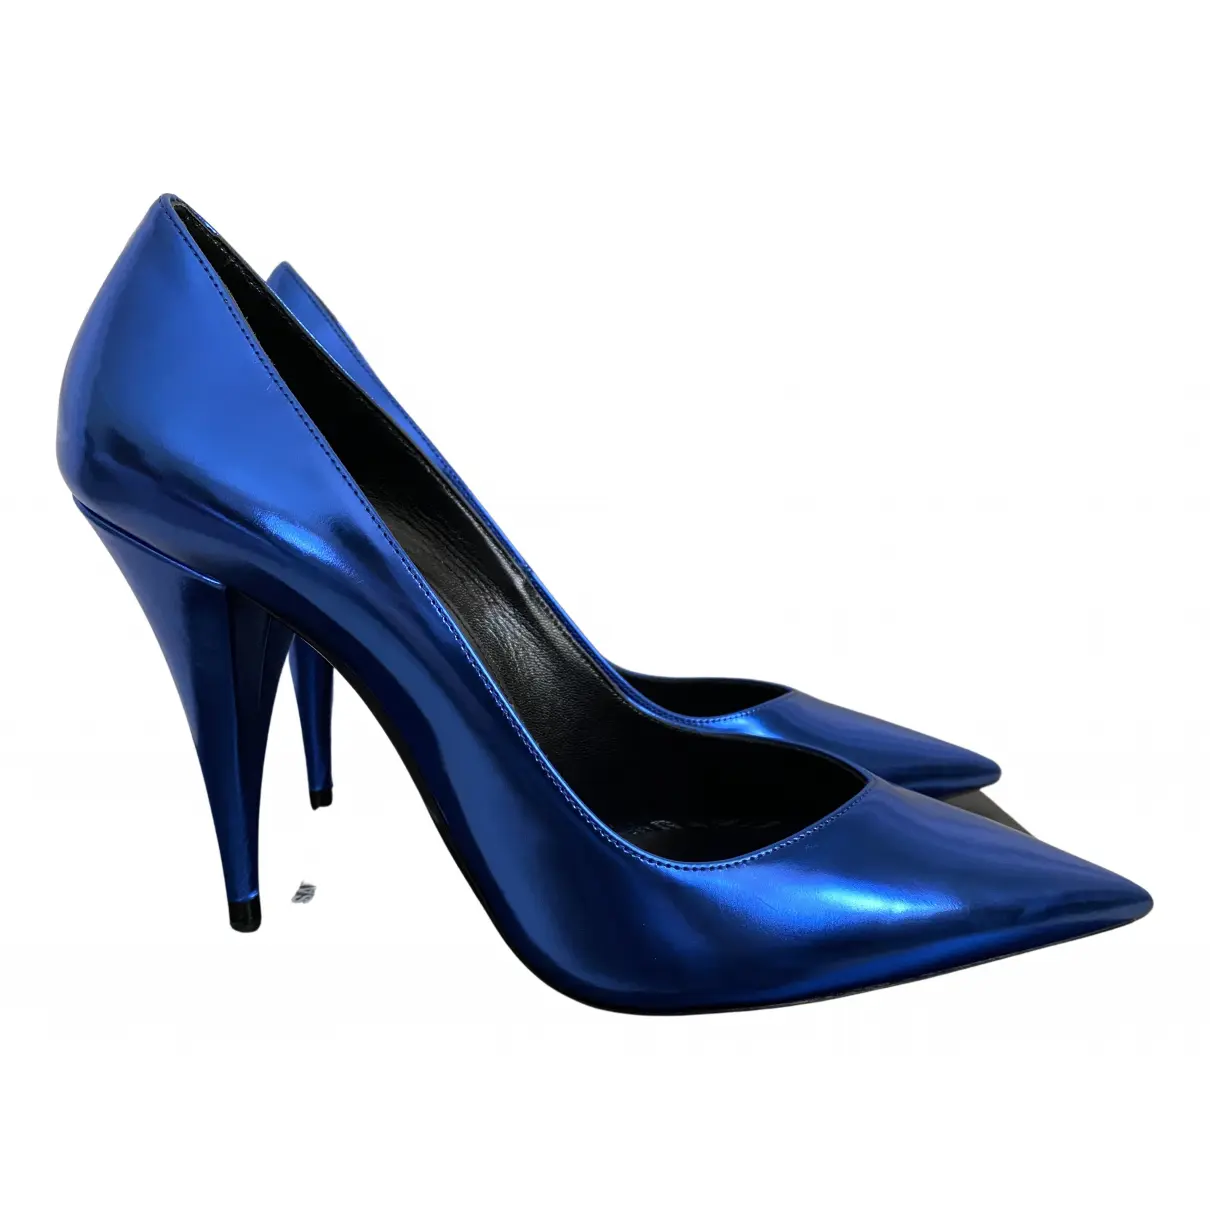 Kiki 55 leather heels Saint Laurent